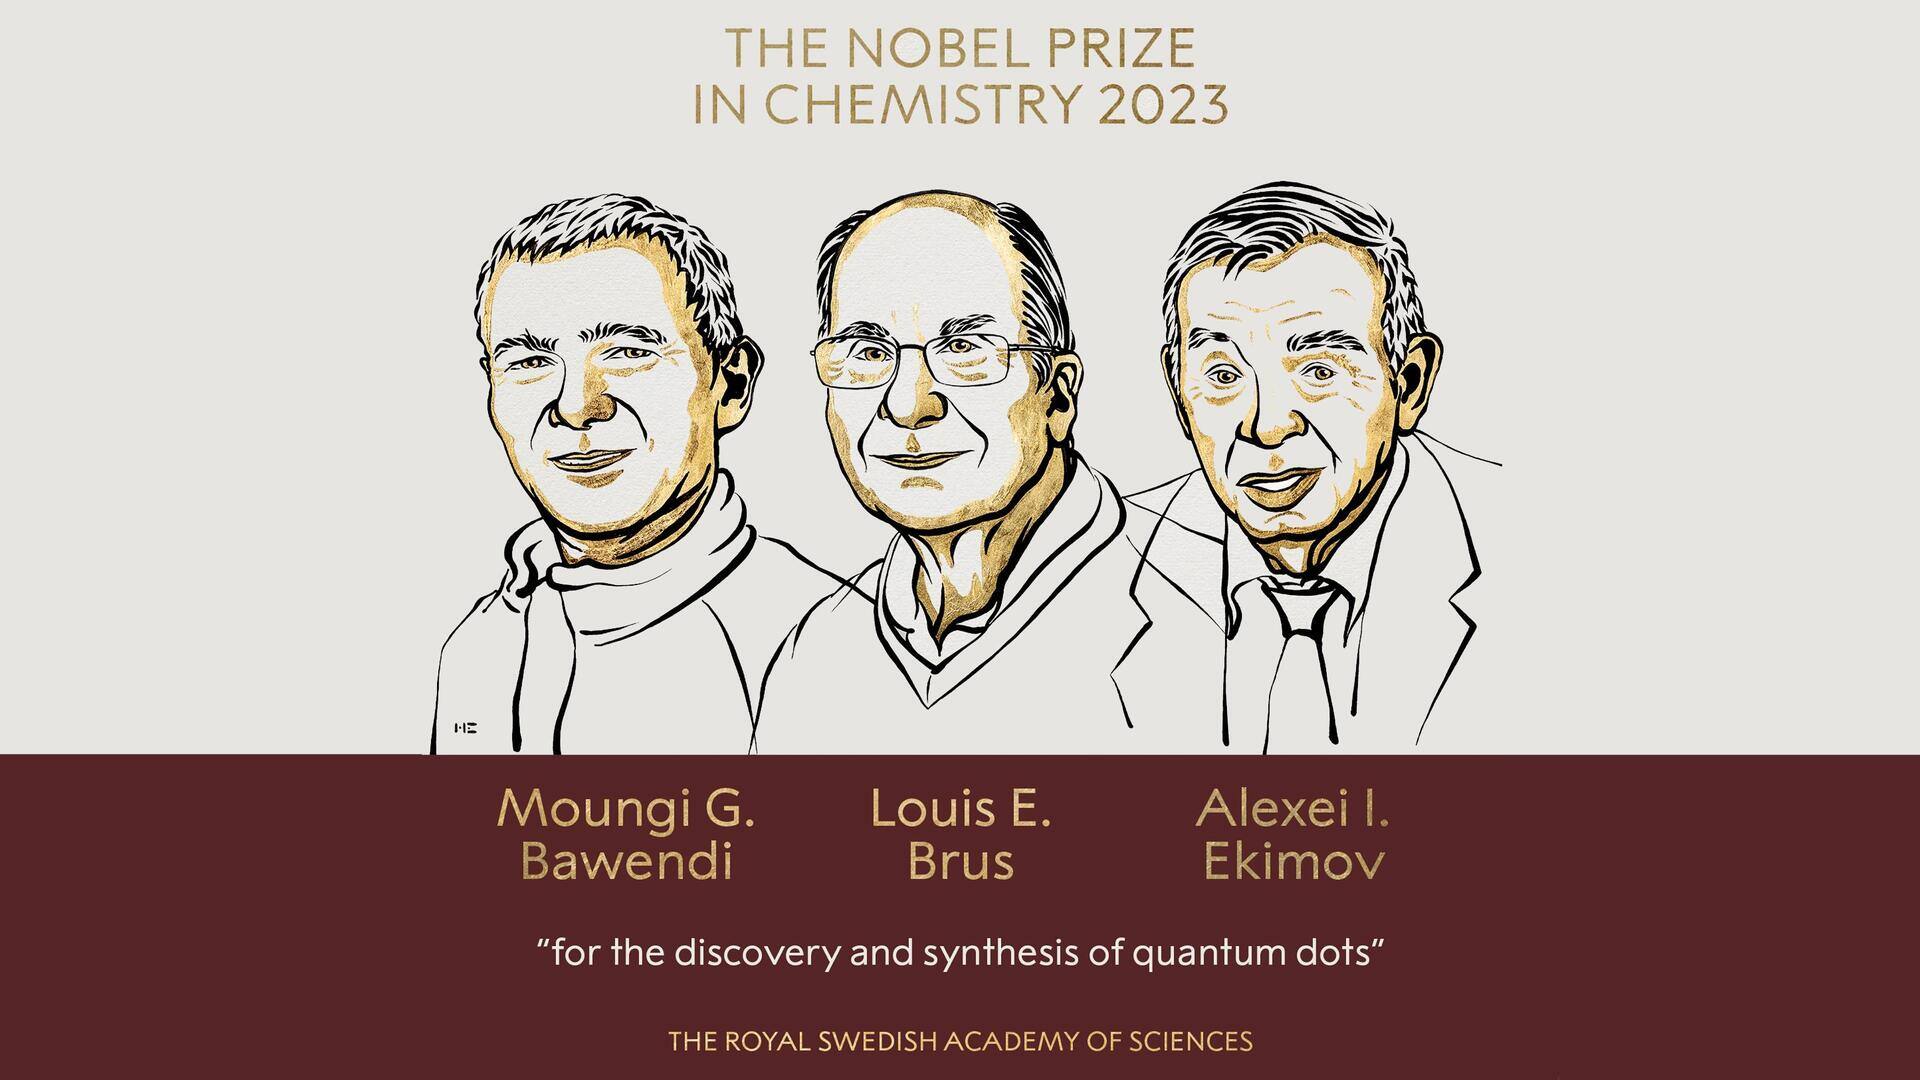 मोउंगी बावेंडी, लुईस ब्रूस और एलेक्सी एकिमोव को मिला 2023 का रसायन विज्ञान नोबेल पुरस्कार 